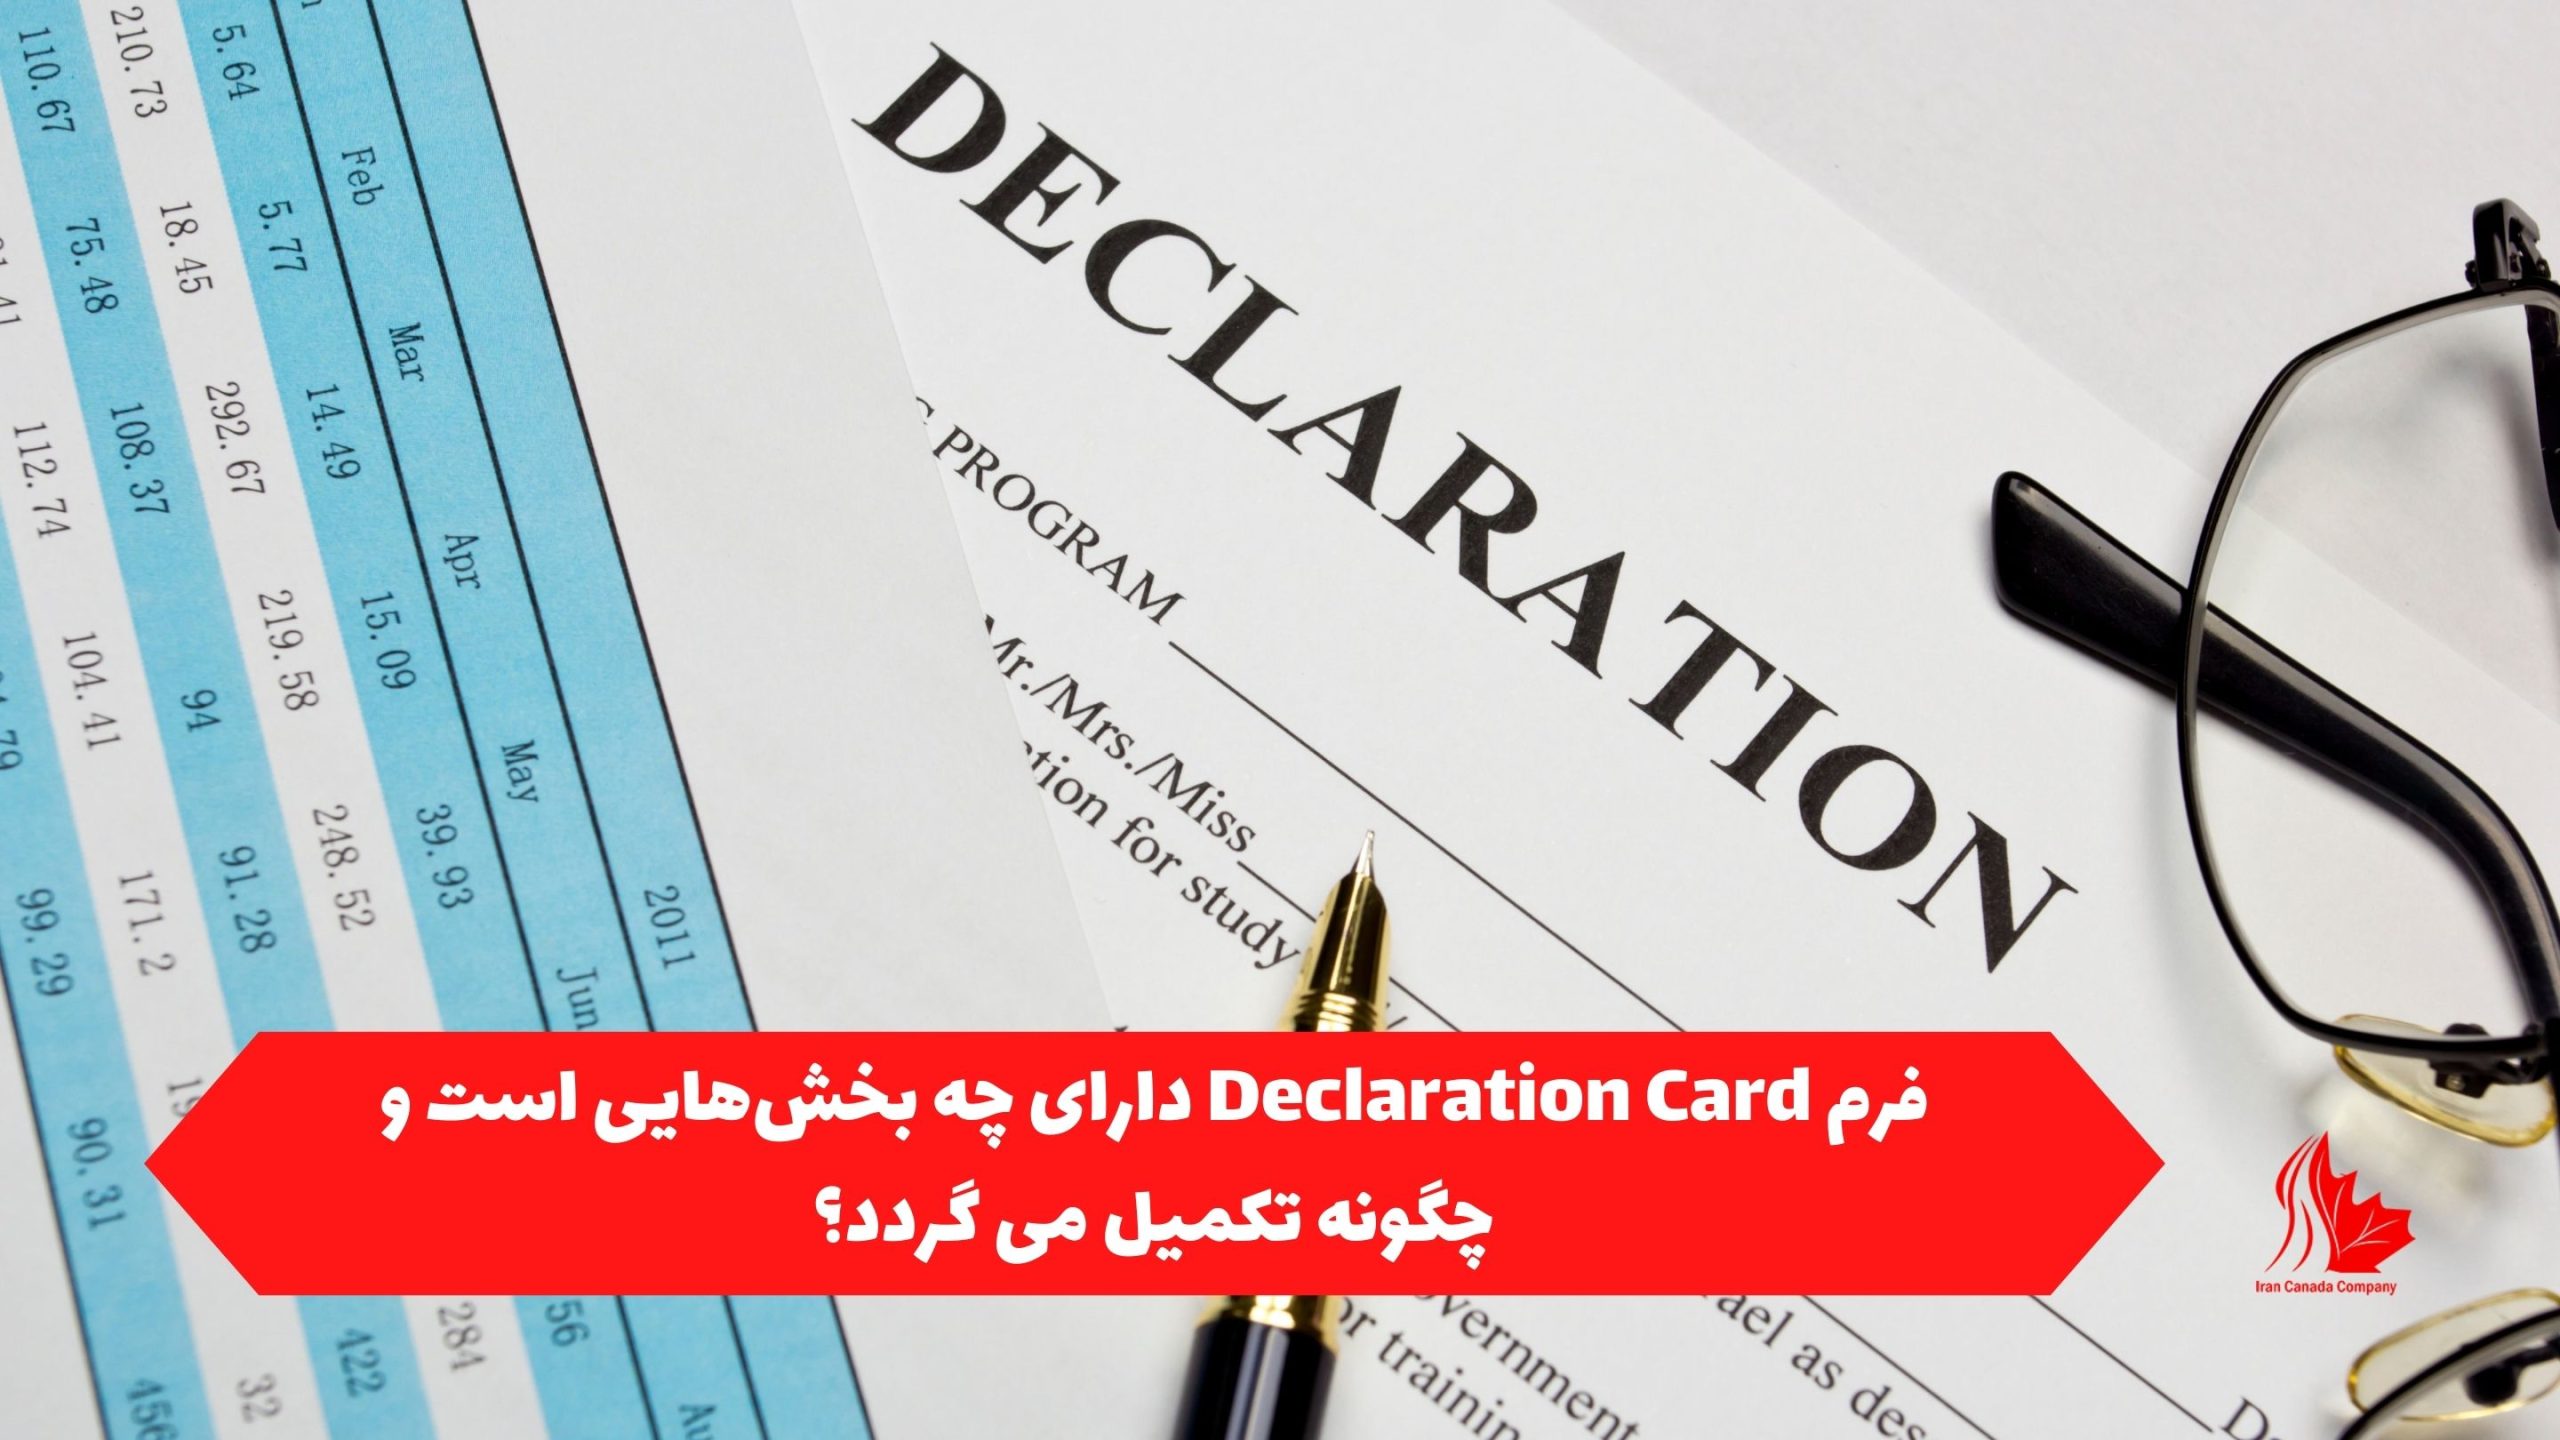 فرم Declaration Card دارای چه بخش‌هایی است و چگونه تکمیل می گردد؟